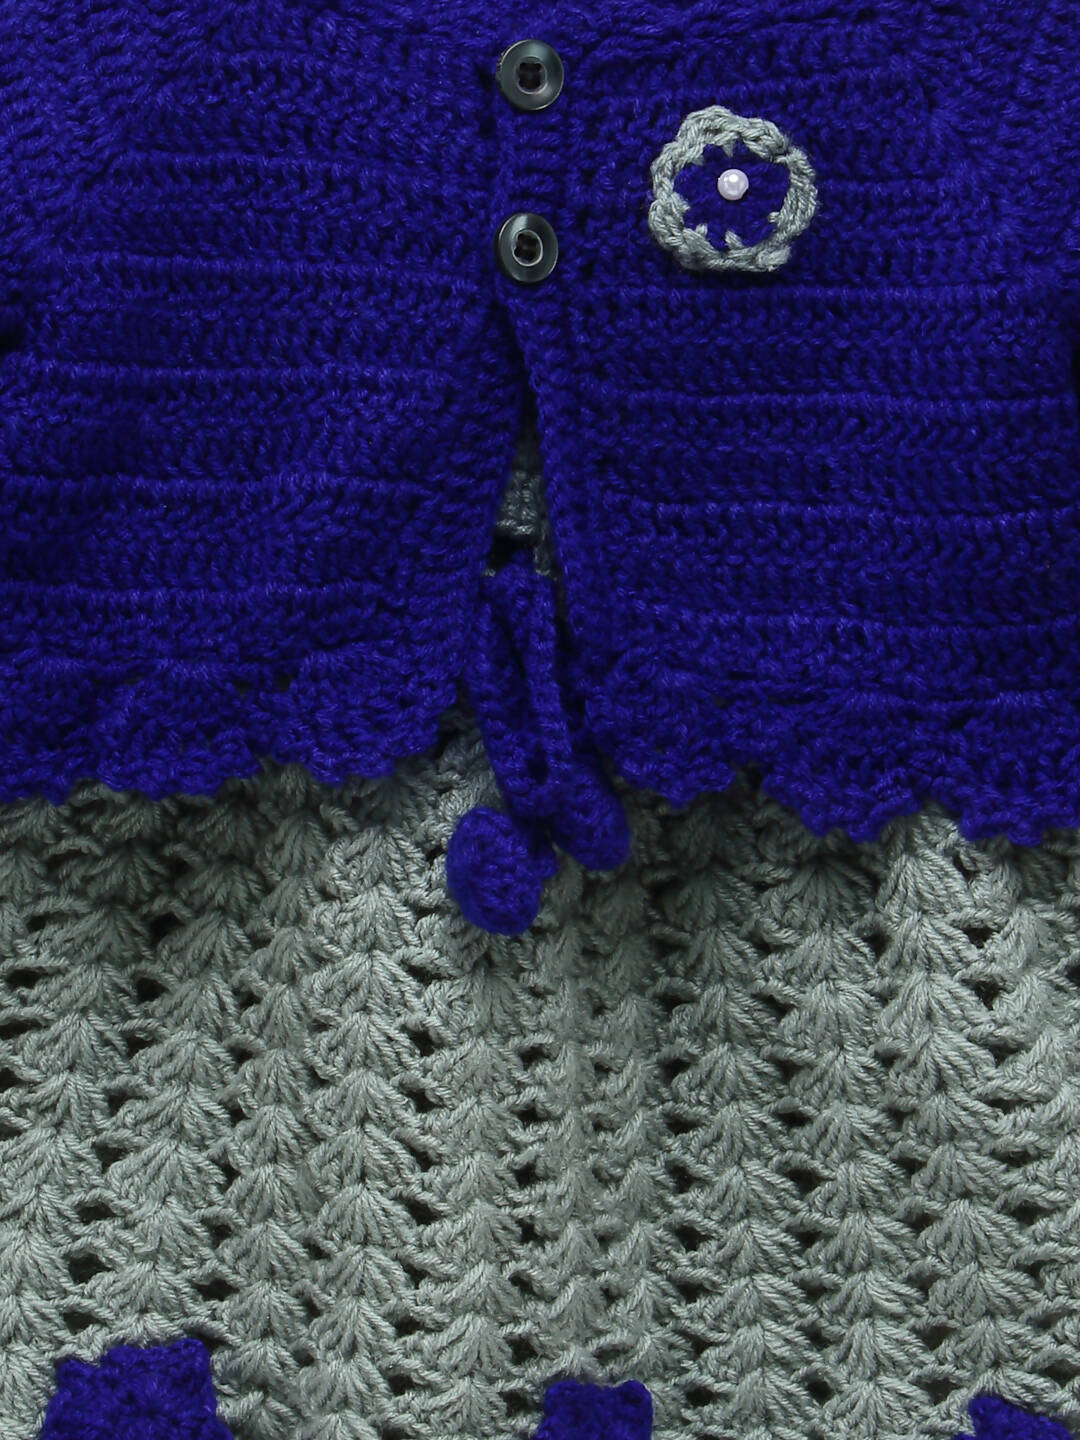 ChutPut Hand knitted Crochet Princess Wool Dress - Blue - Distacart